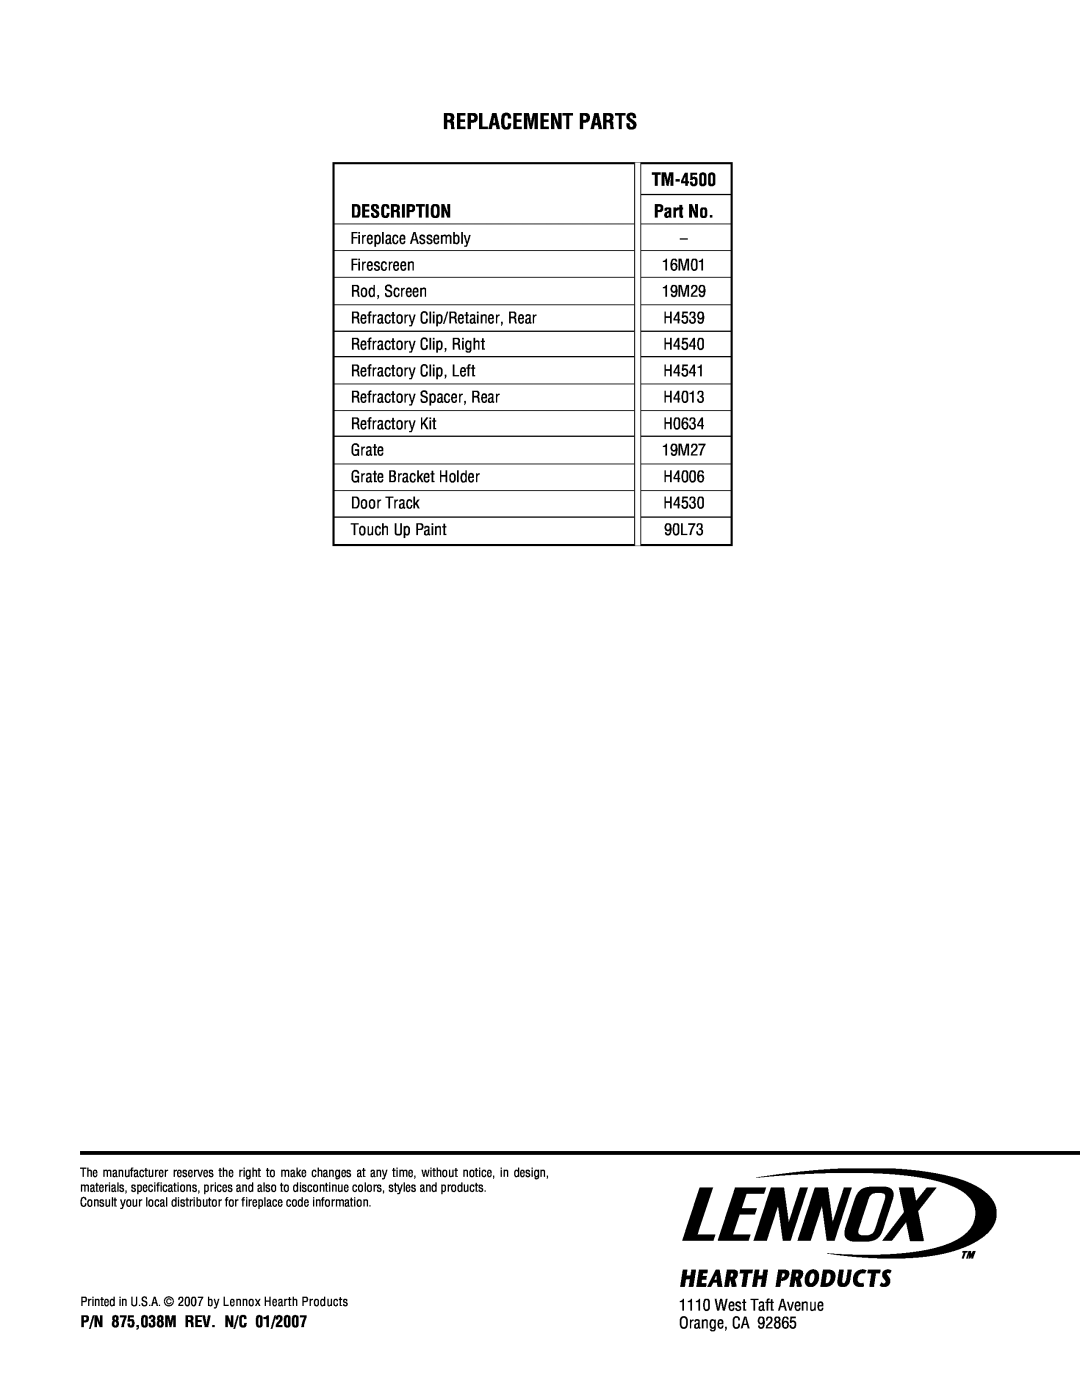 Lennox Hearth TM-4500 manual Replacement Parts, Description, P/N 875,038M REV. N/C 01/2007 